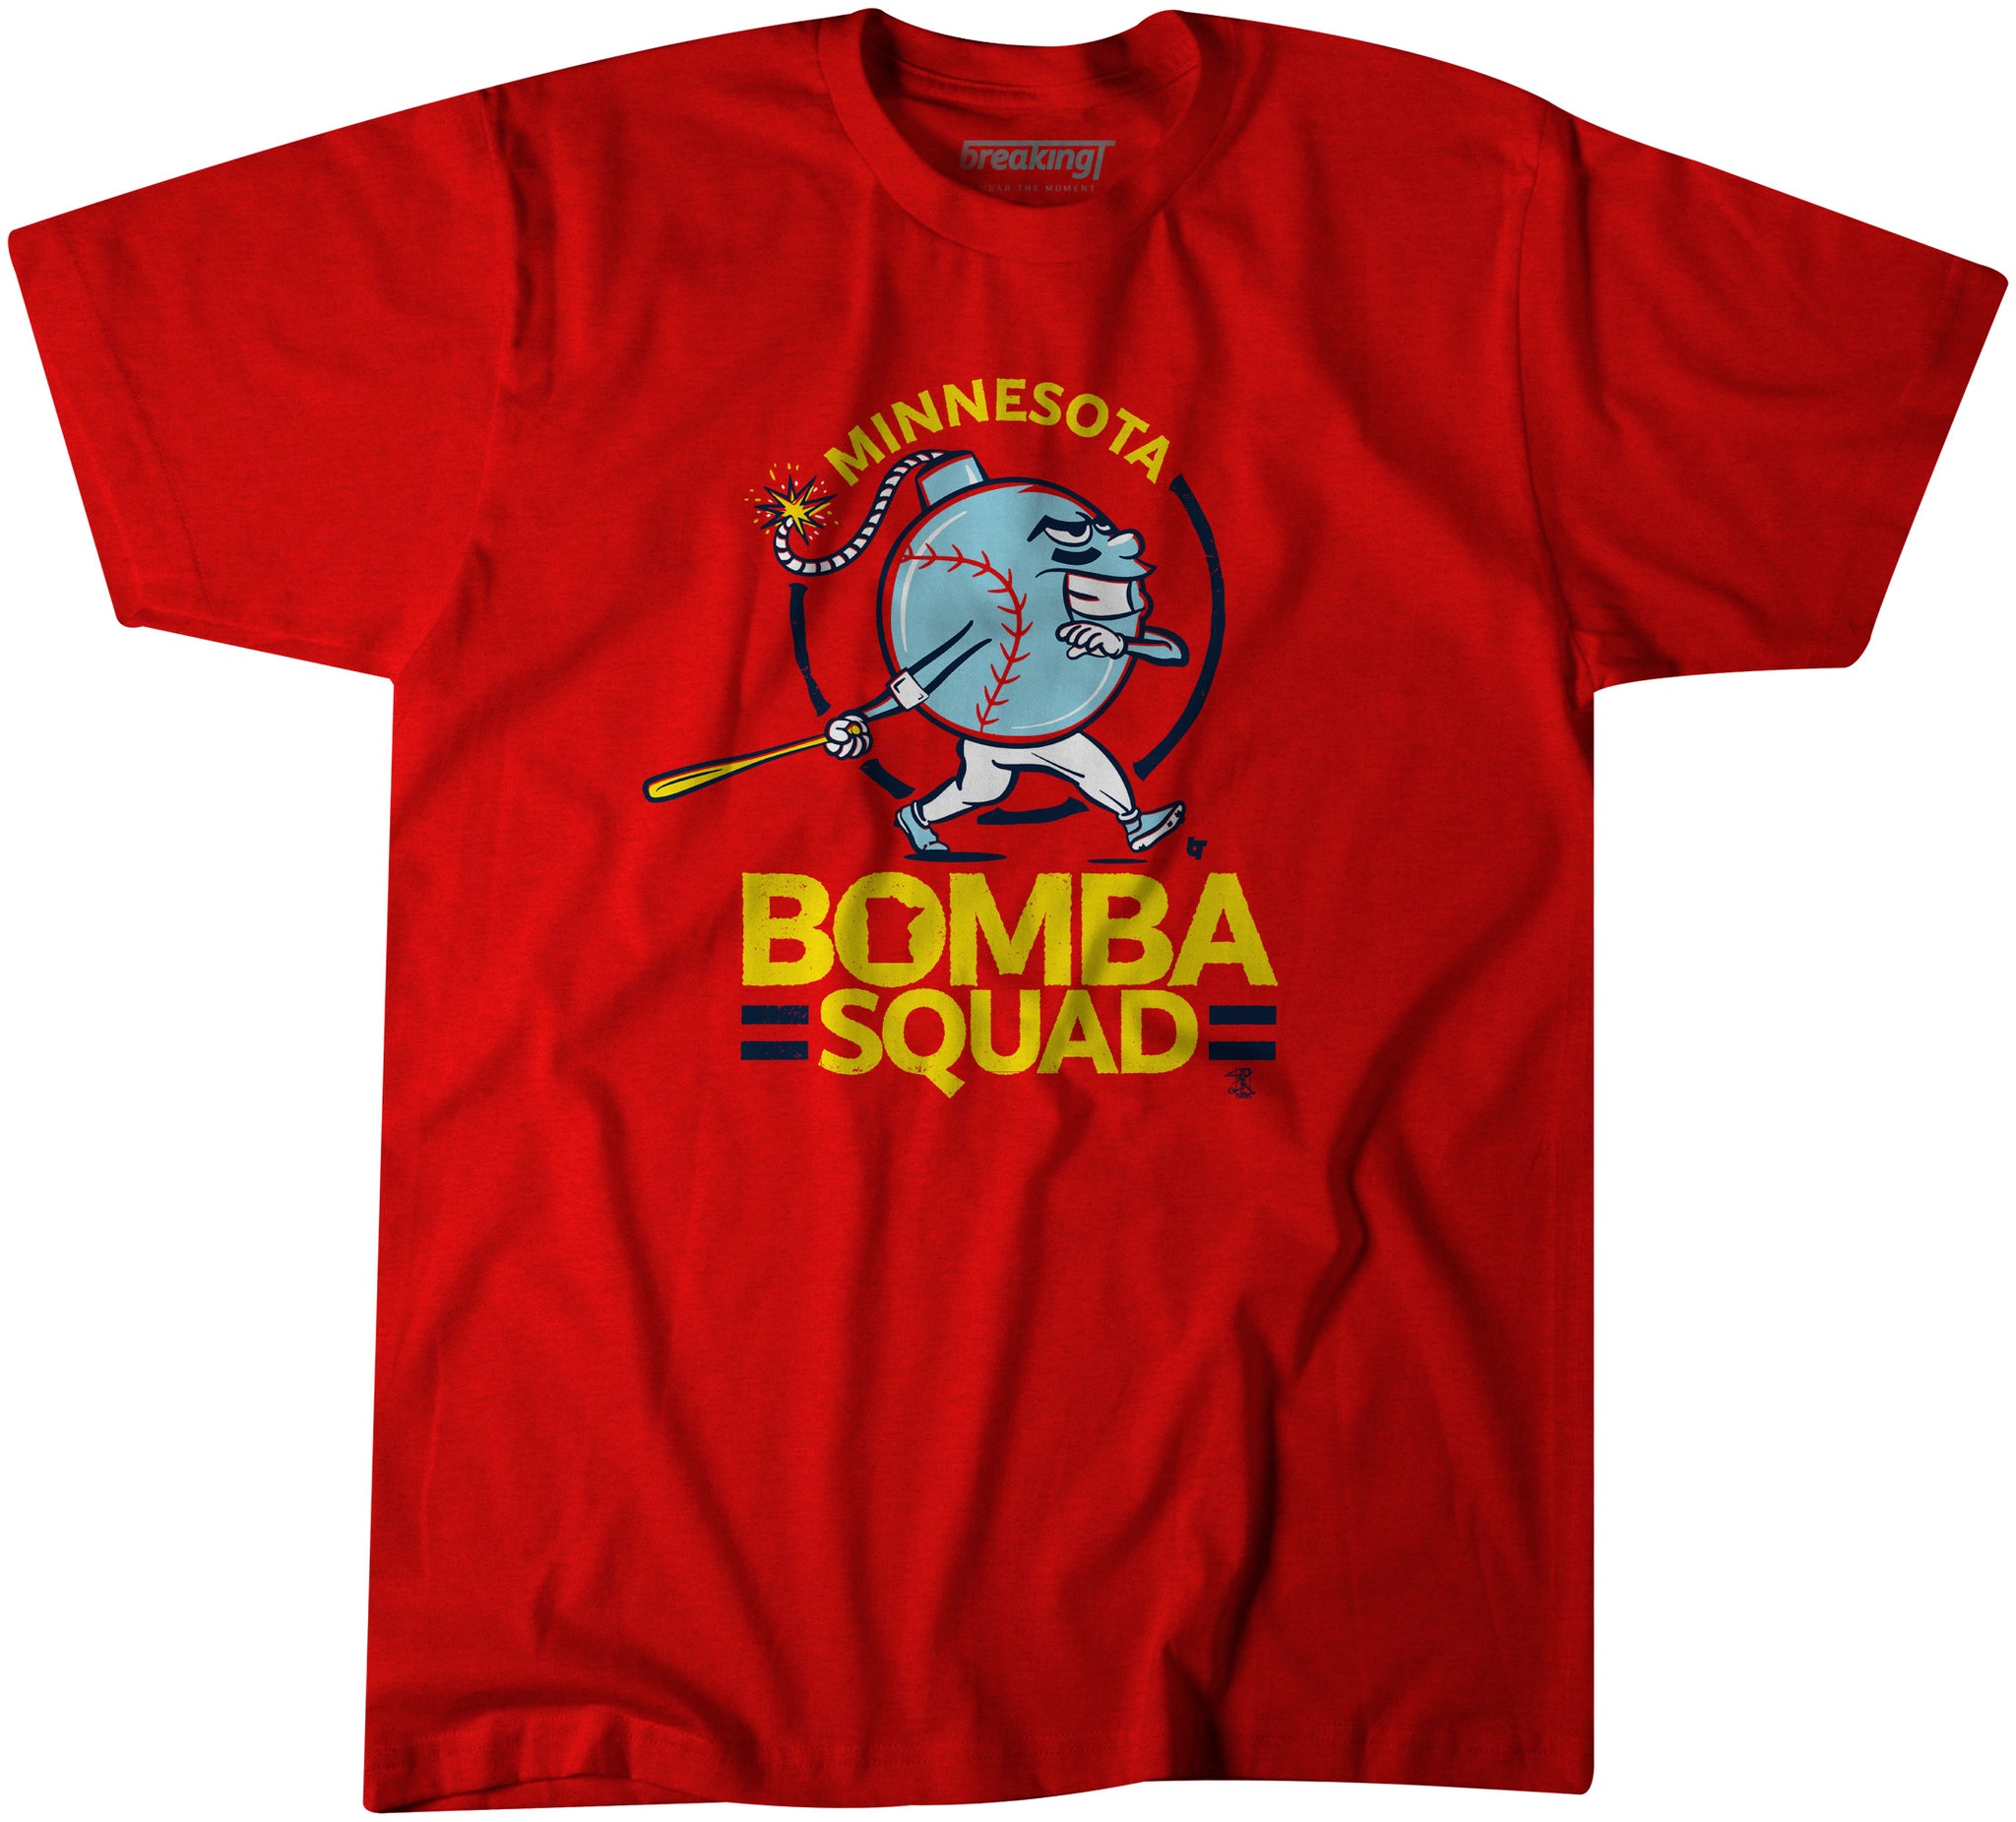 bomba squad shirt